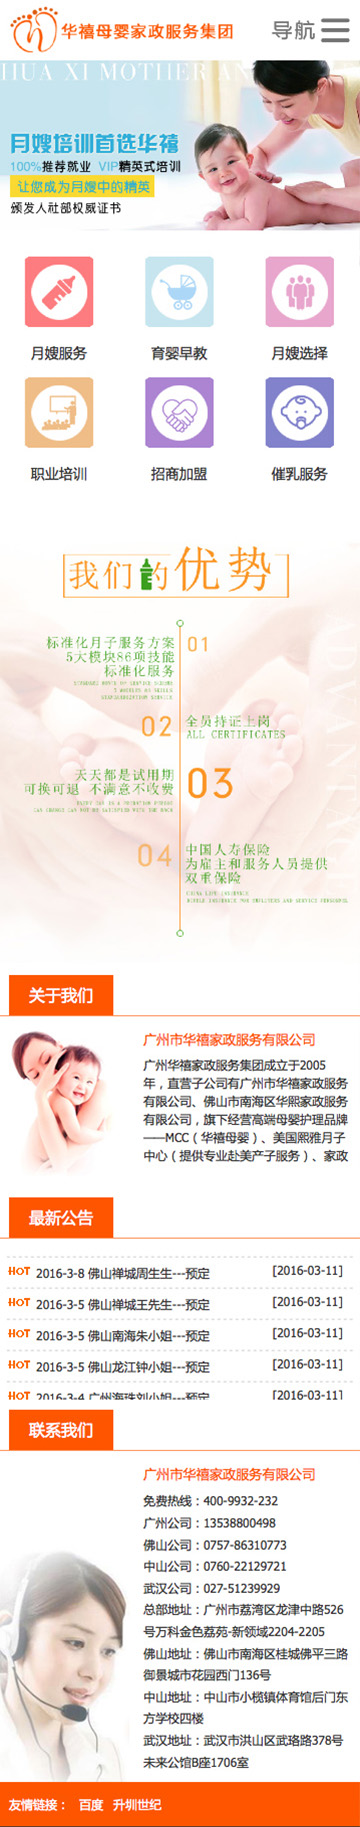 华禧母婴企业展示手机网站